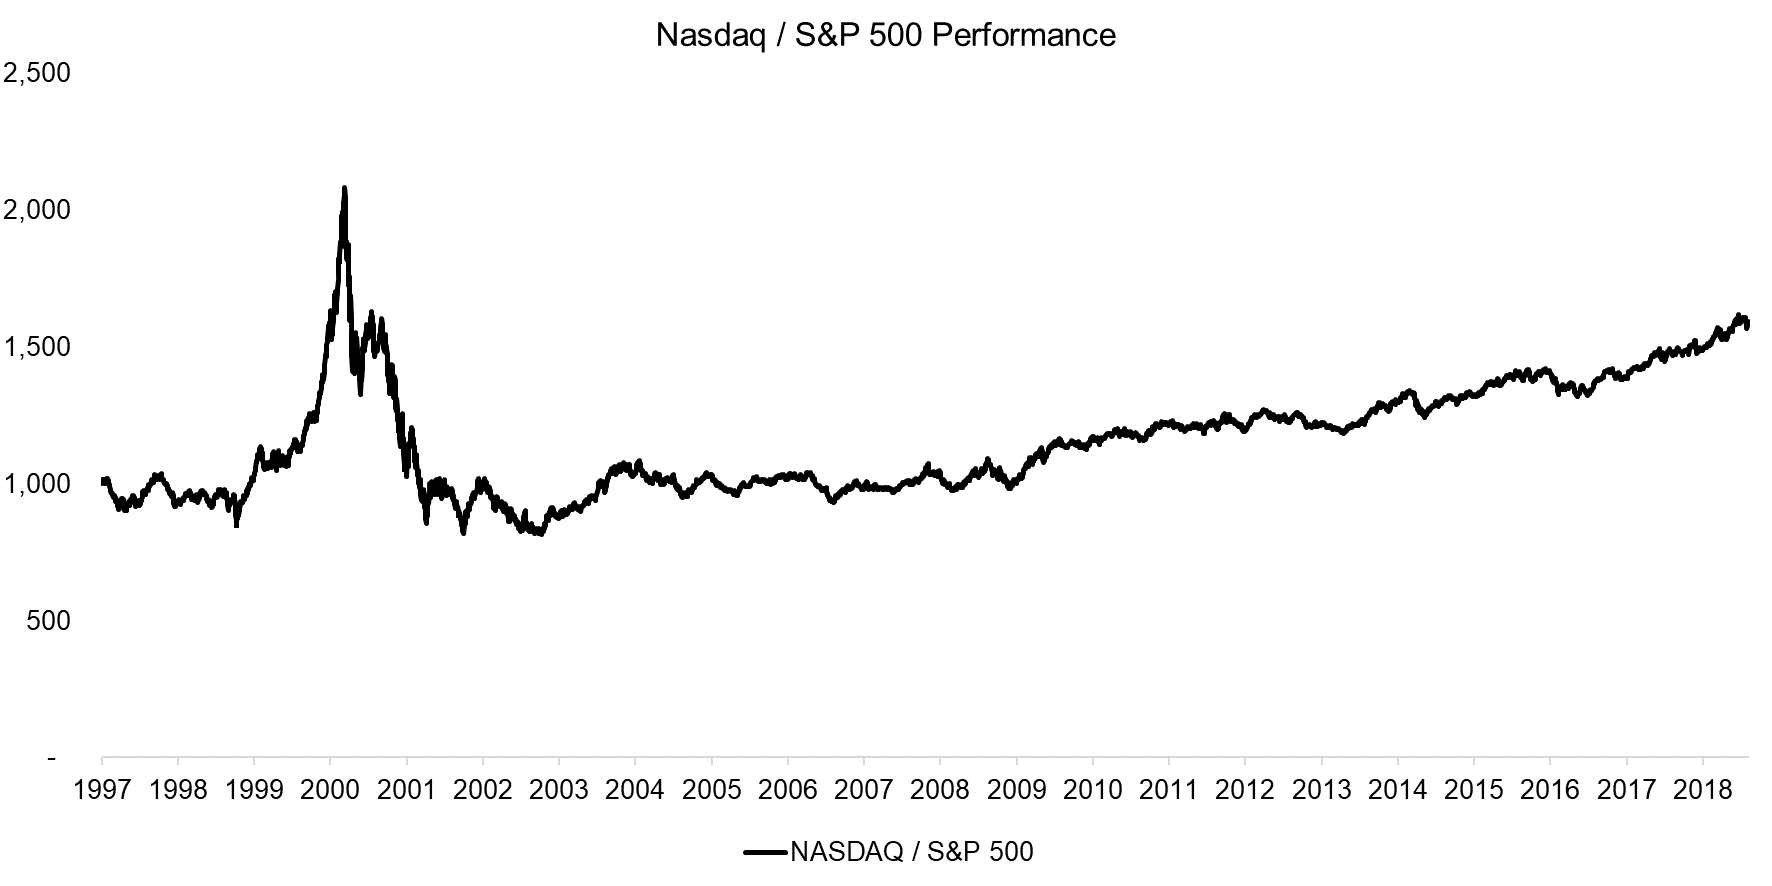 Nasdaq S&P 500 Performance